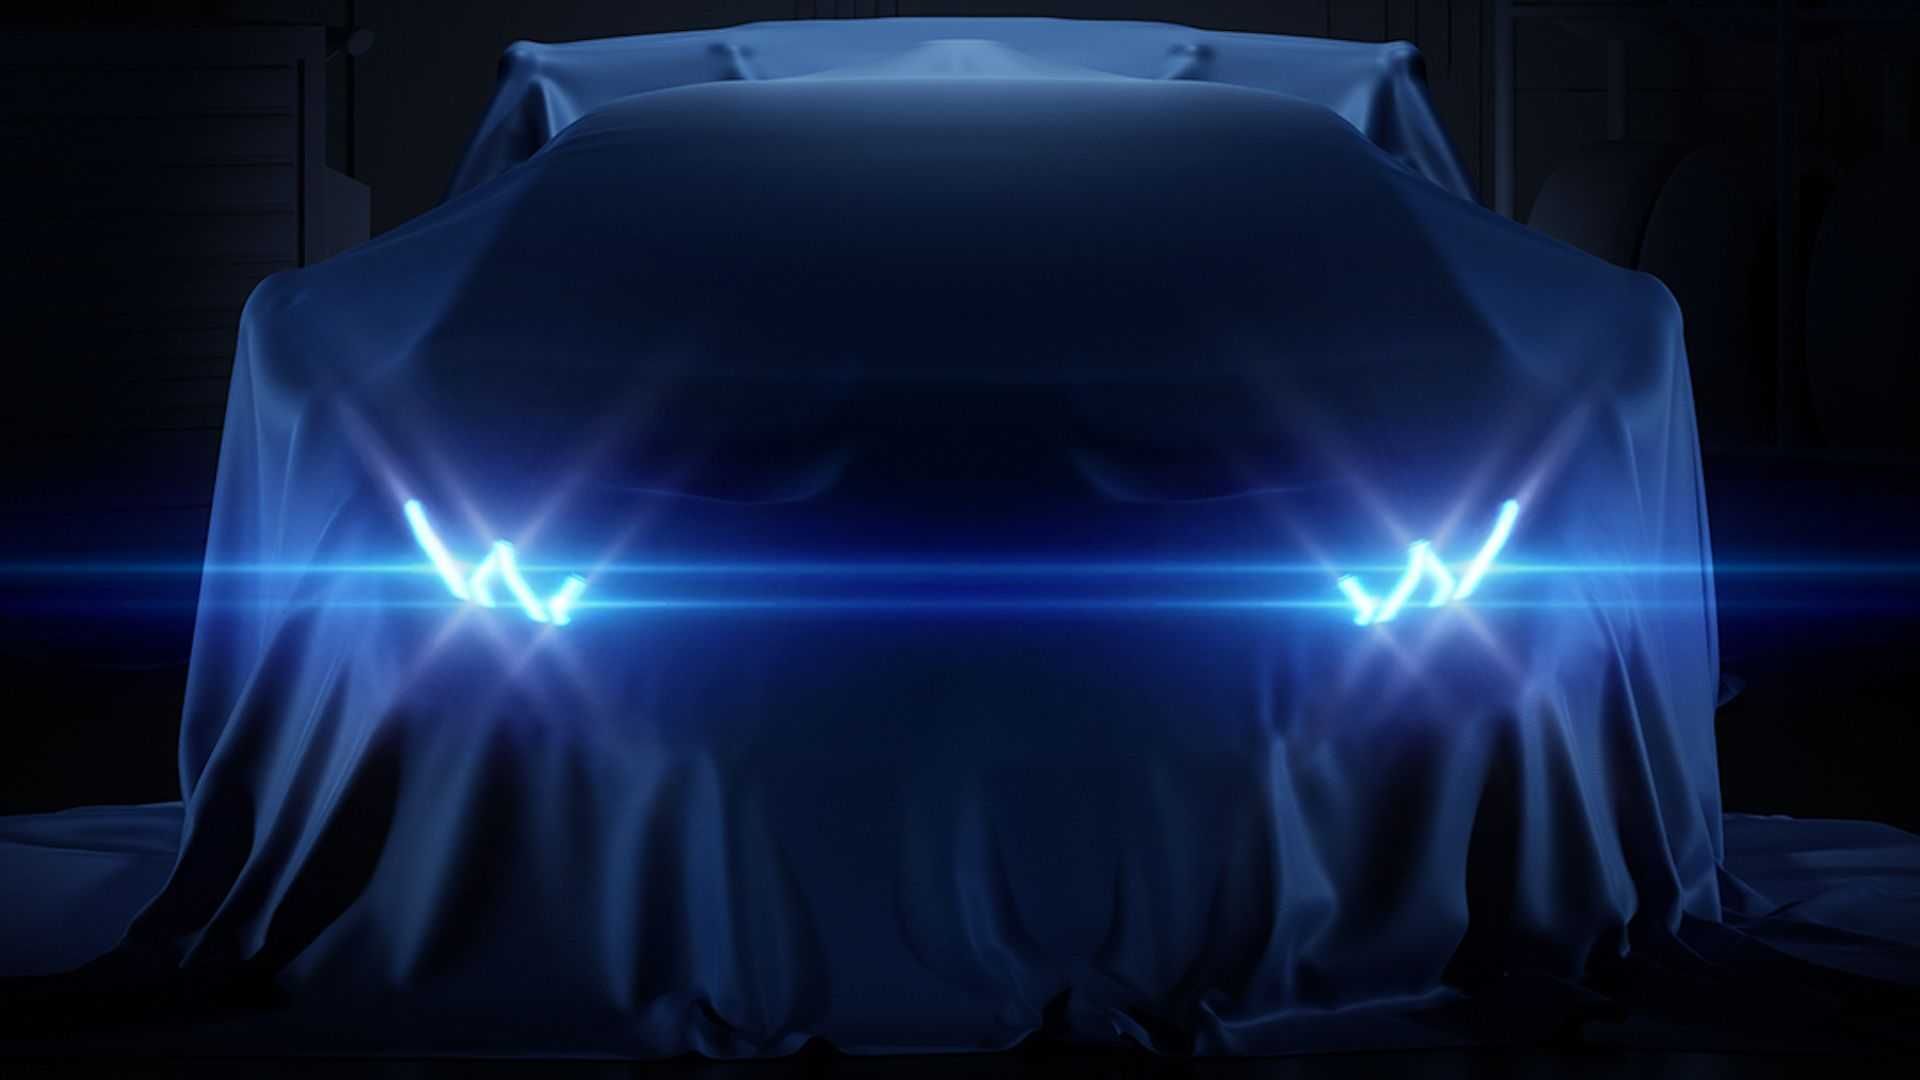 Lamborghini teases hardcore Huracan STO, debuts November 18